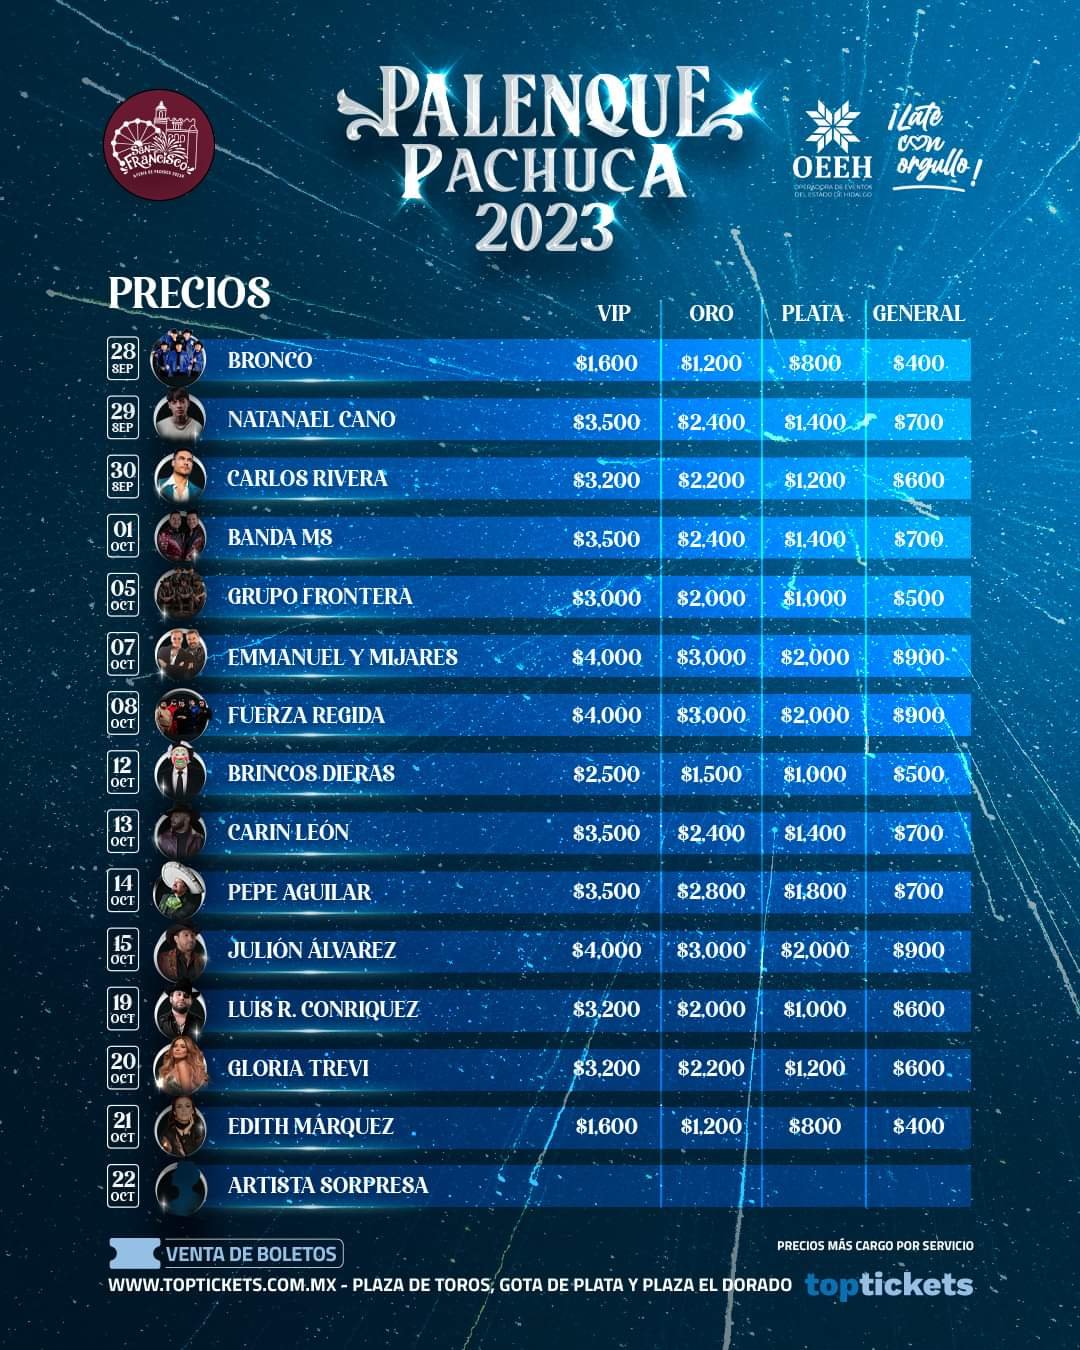 #Oficial 🎤 Cartel completo y precios del Palenque de la Feria de Pachuca 2023